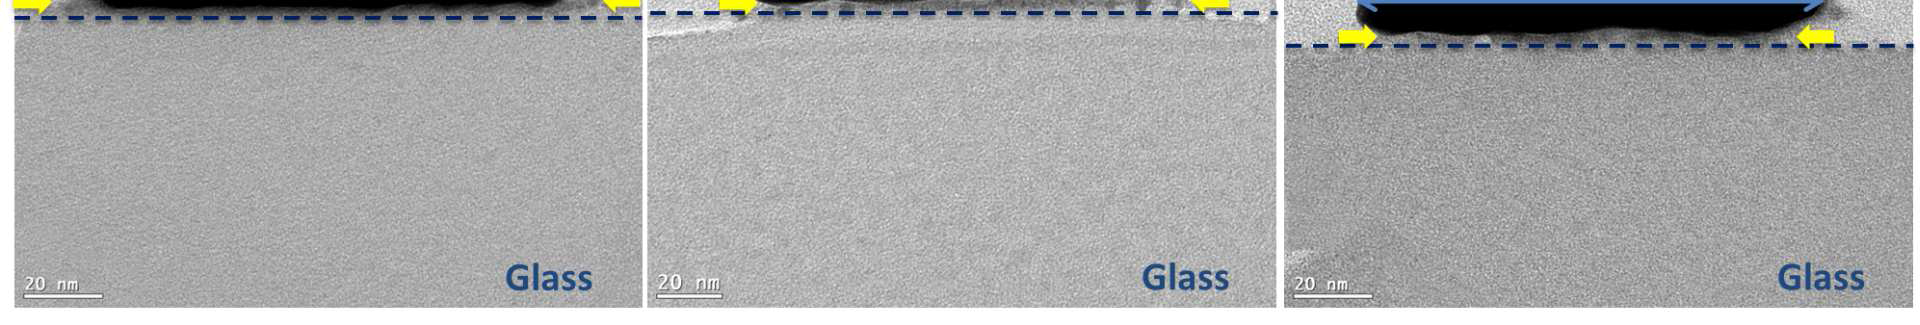 피라나 처리 후 골드 닷의 TEM 단면 이미지 (a)0 min, (b) 5min, (c)10min